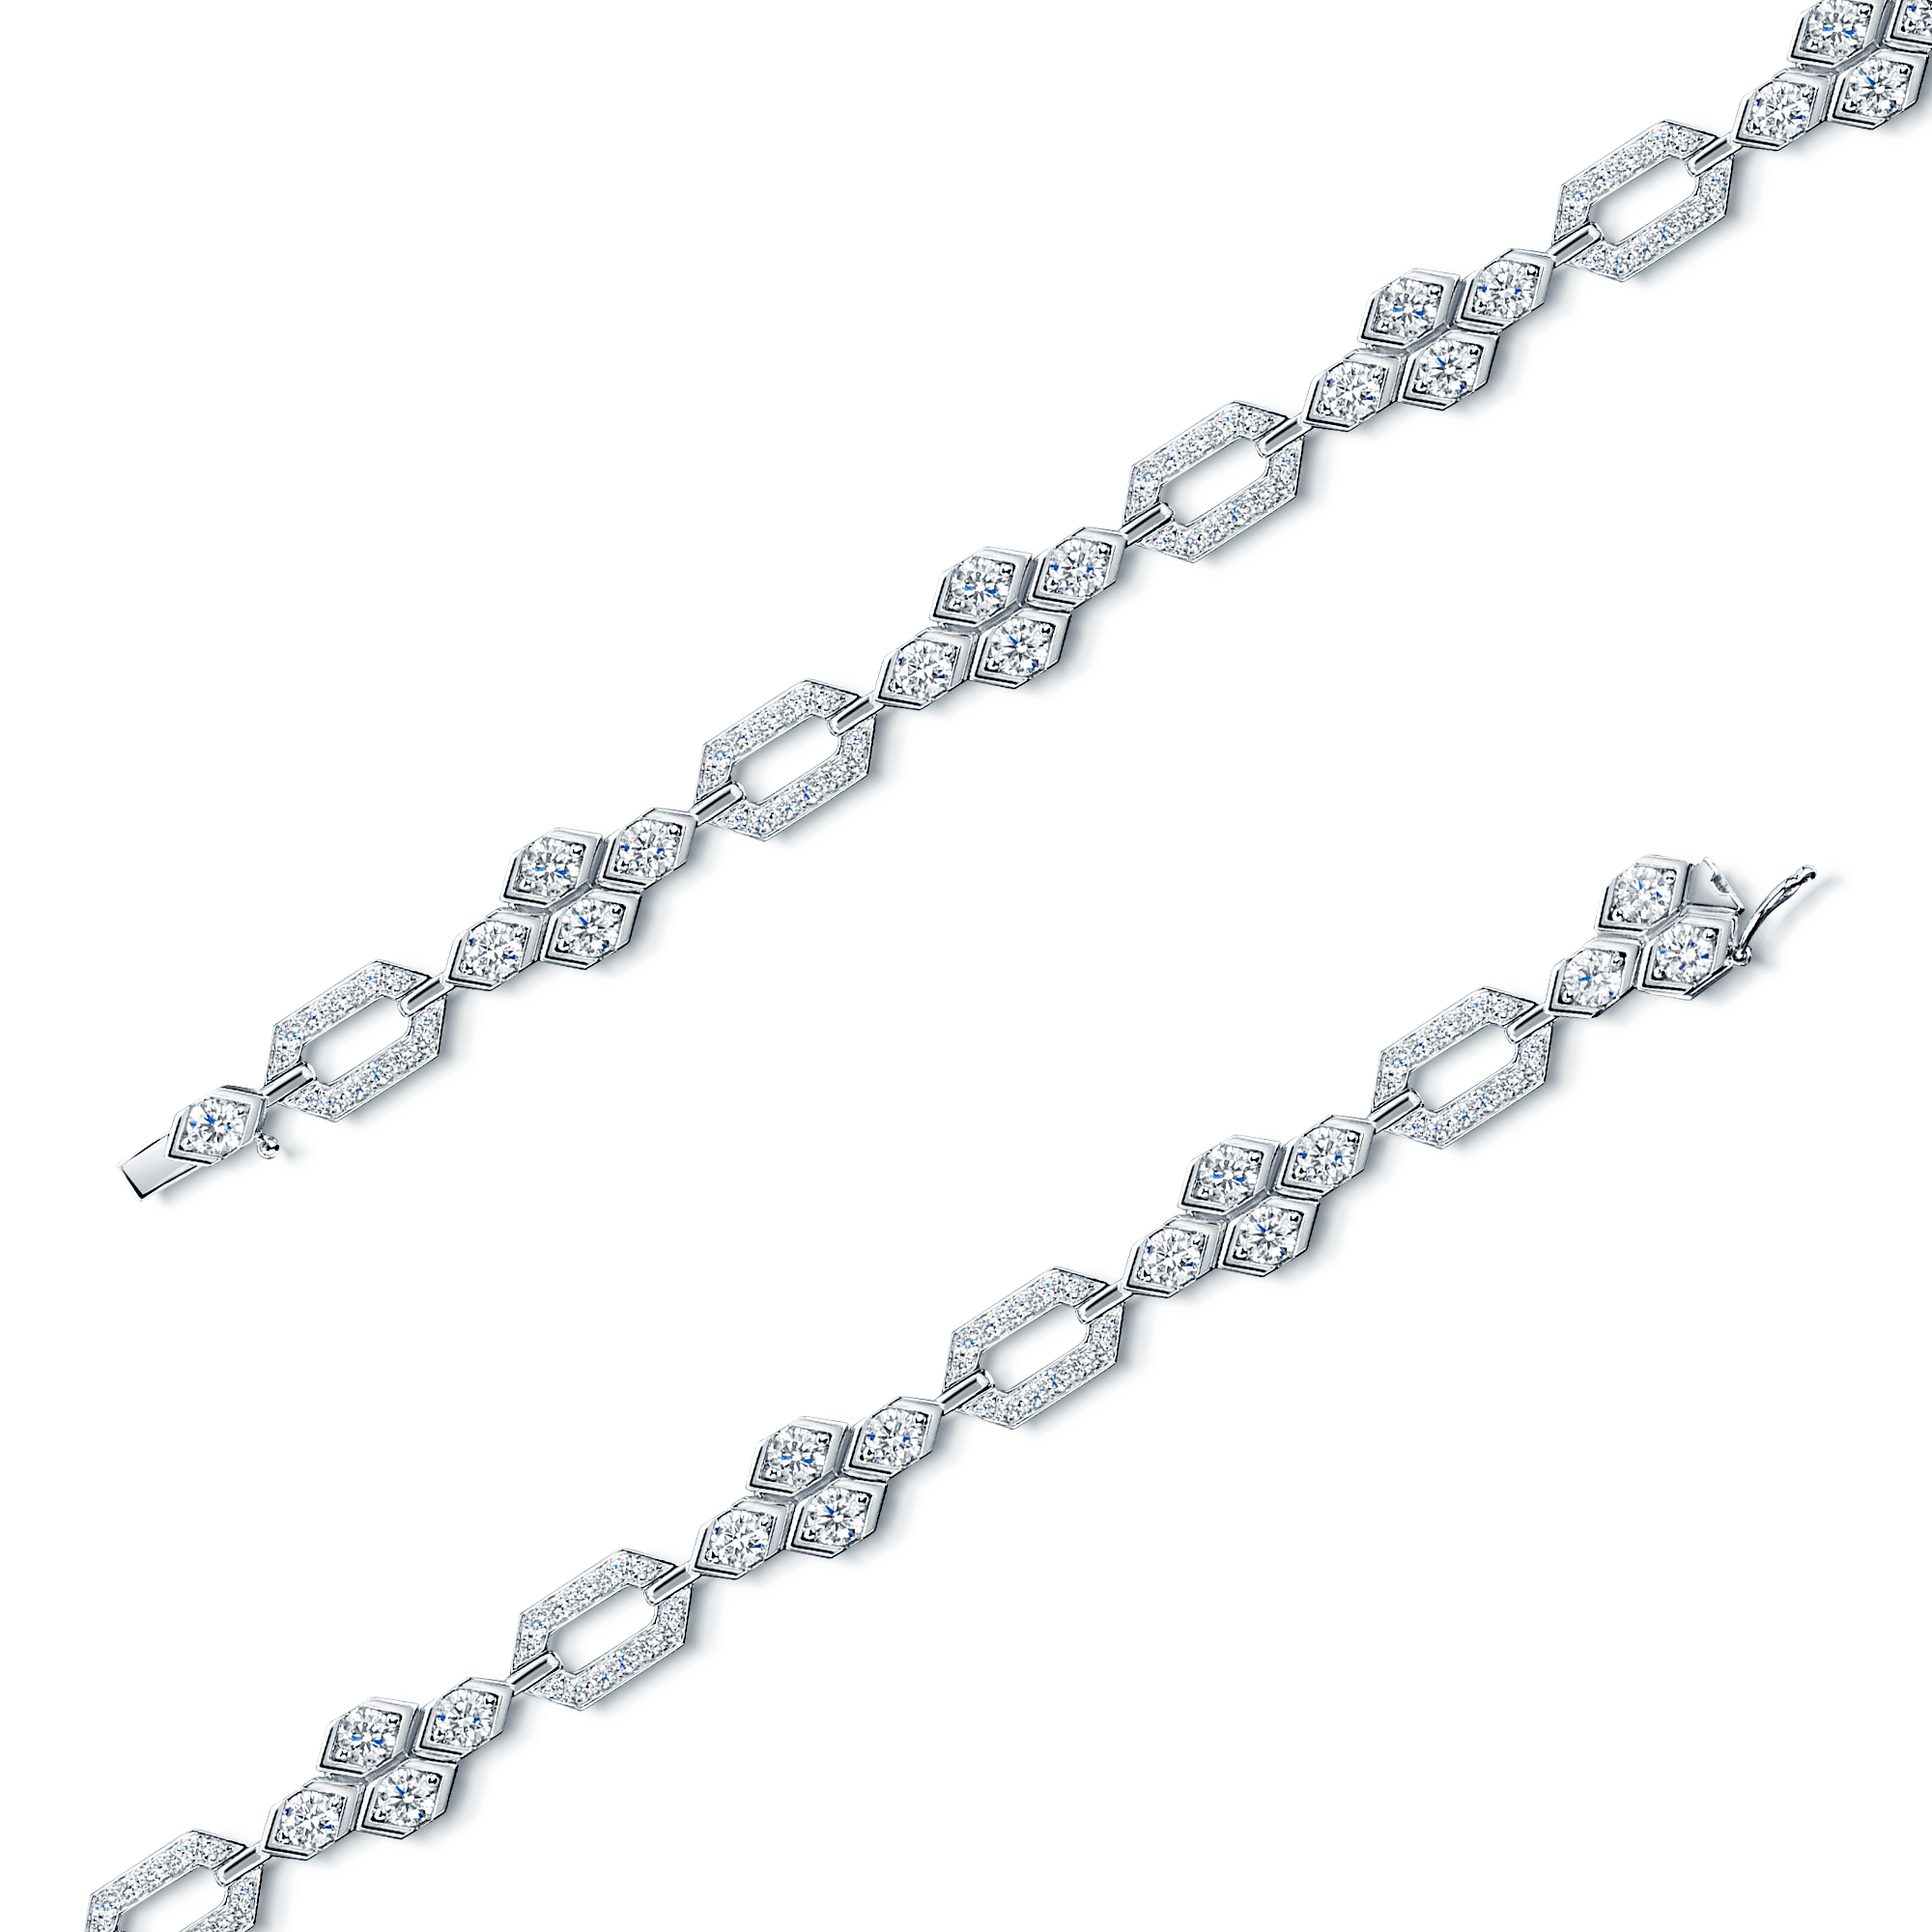 Nouveau Collection 18ct White Gold Full Diamond Line Bracelet